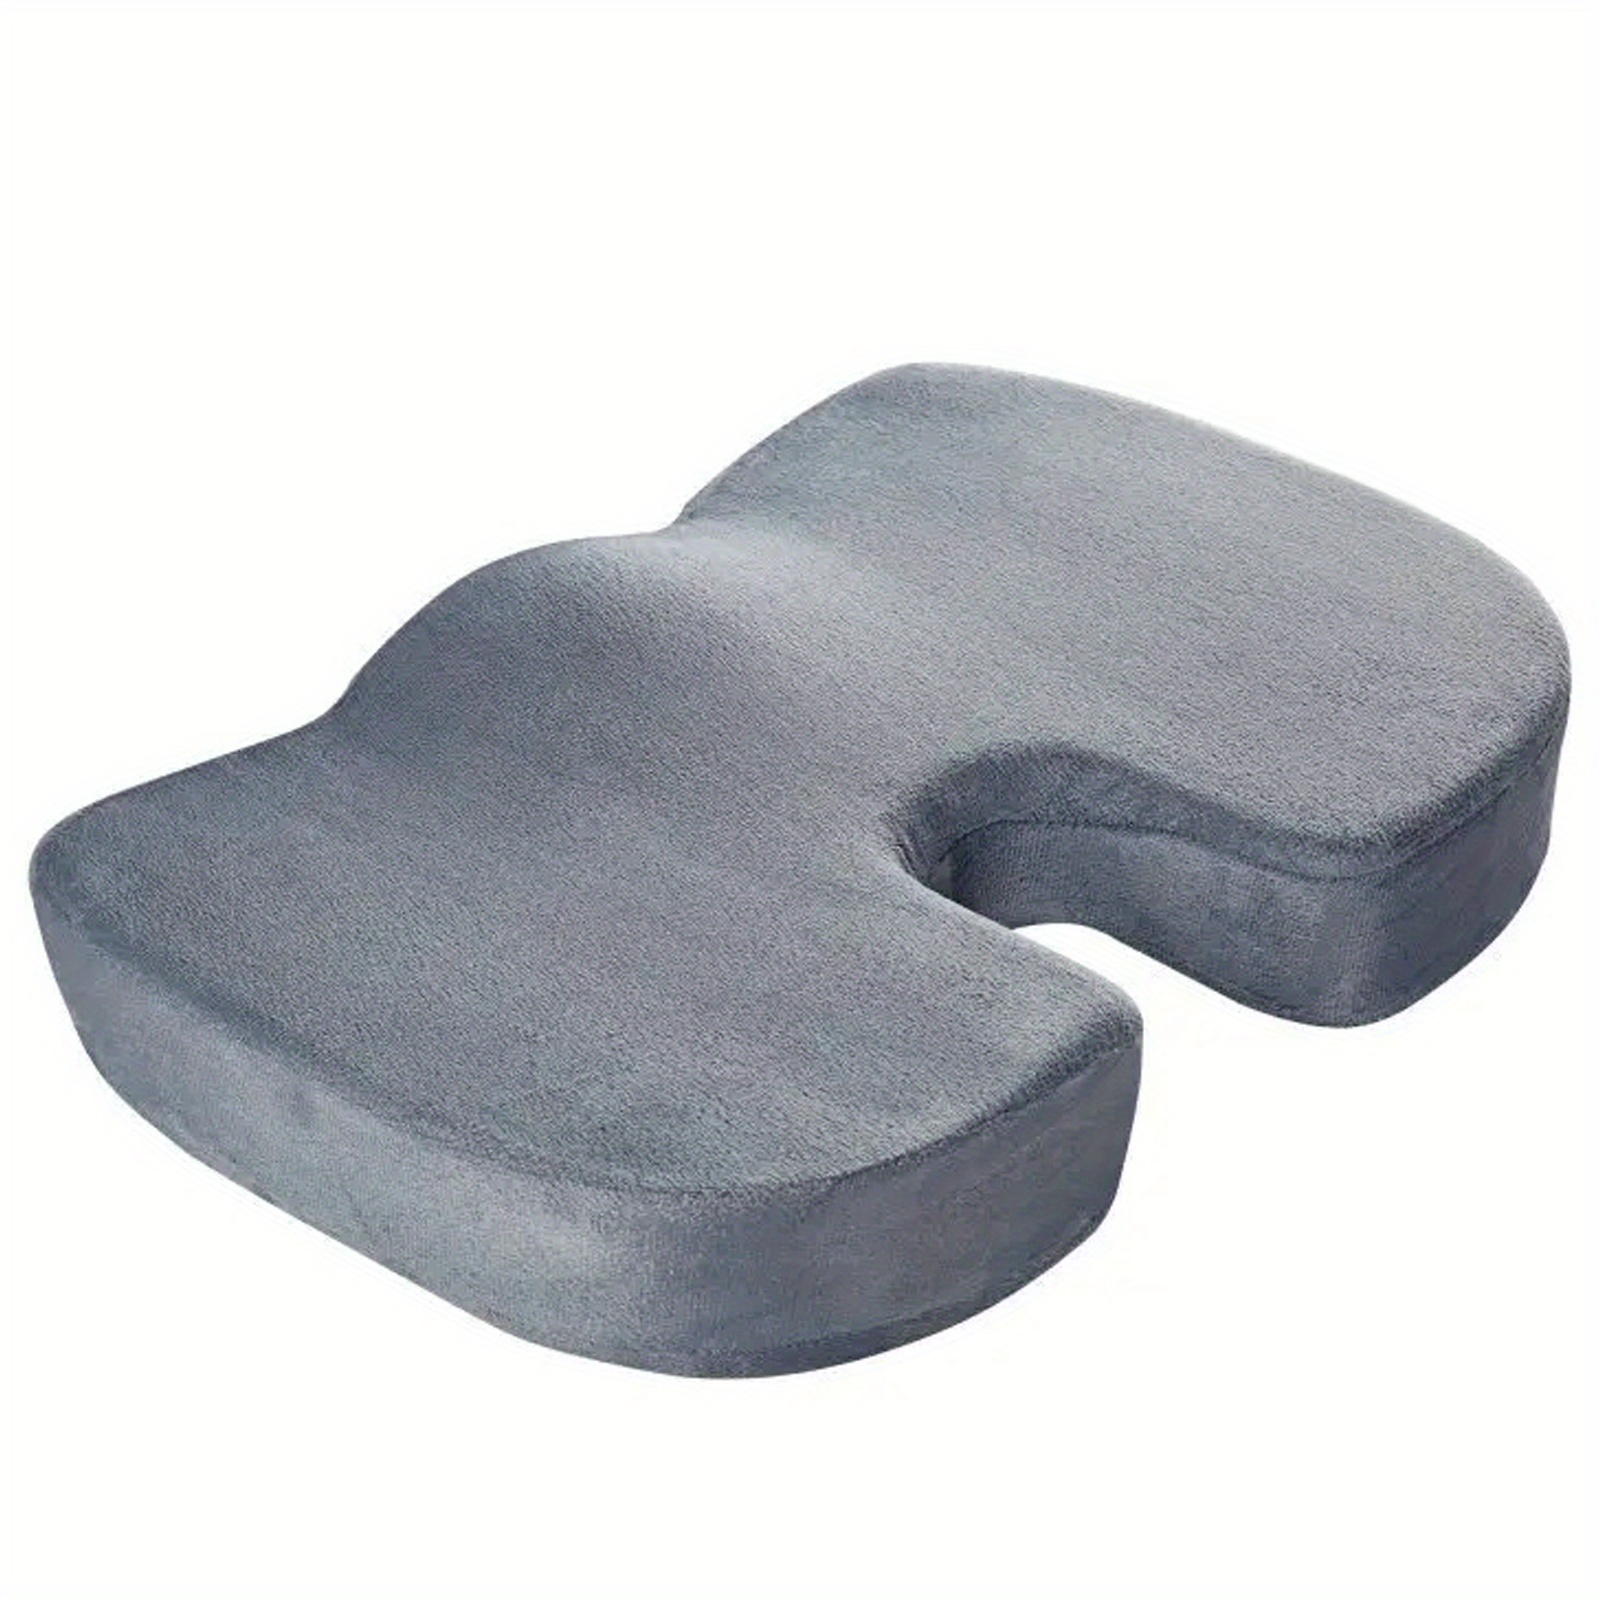 WAOAW Seat Cushion Office Chair Butt Pillow Car Long Sitting Memory Foam